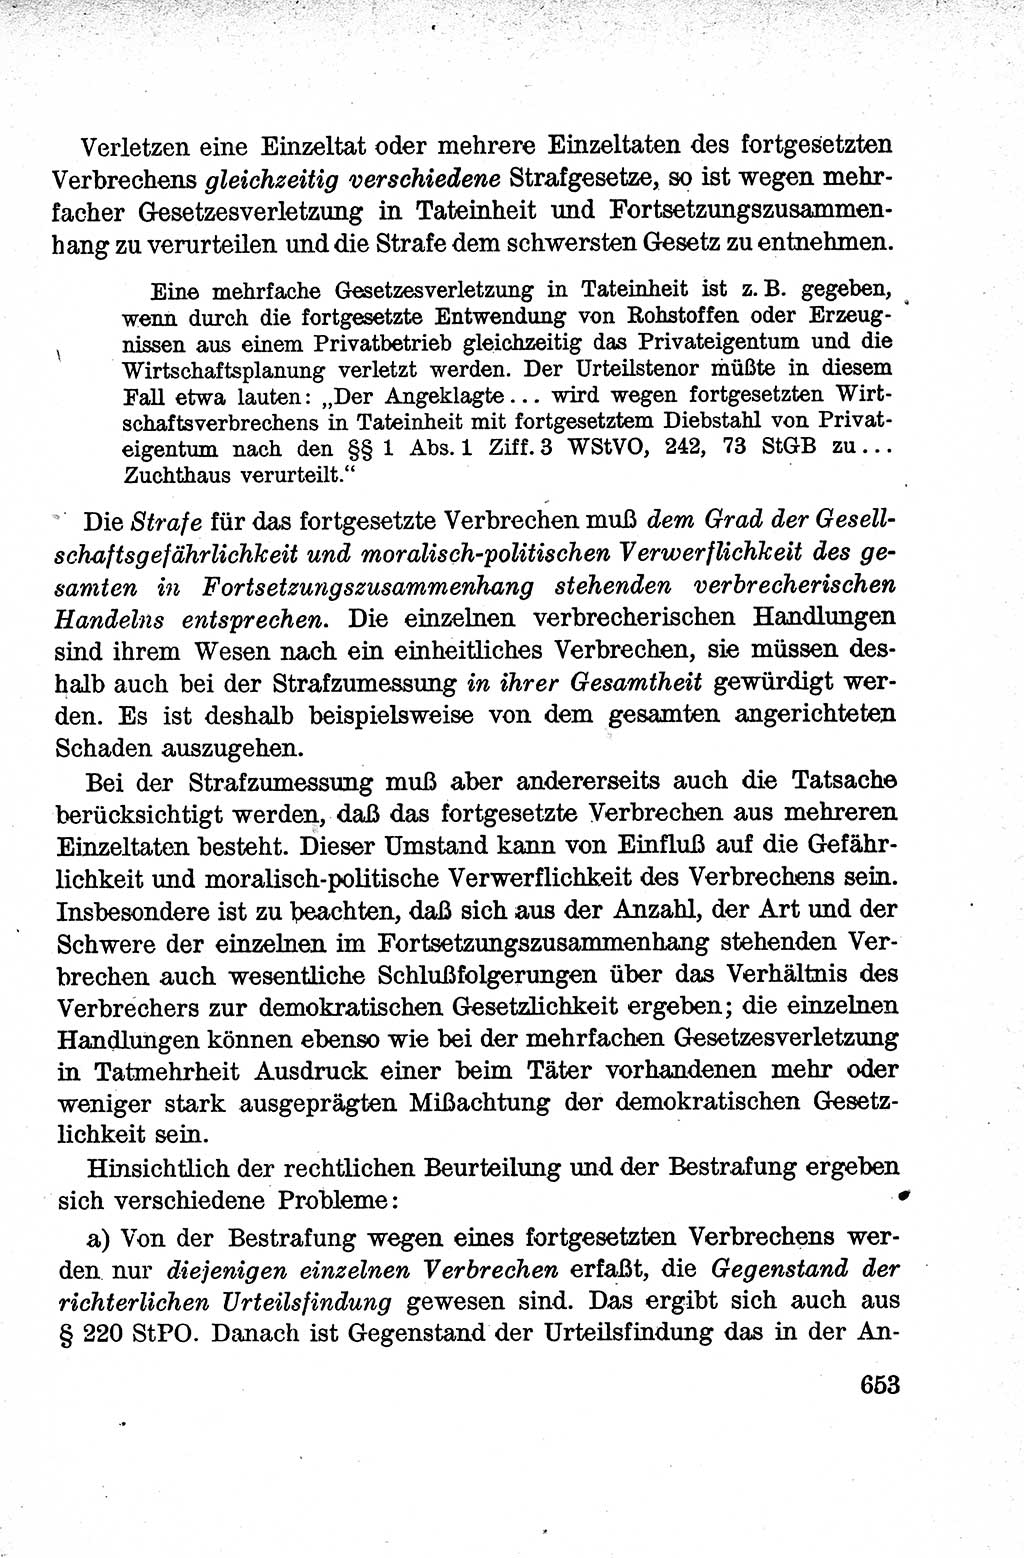 Lehrbuch des Strafrechts der Deutschen Demokratischen Republik (DDR), Allgemeiner Teil 1959, Seite 653 (Lb. Strafr. DDR AT 1959, S. 653)